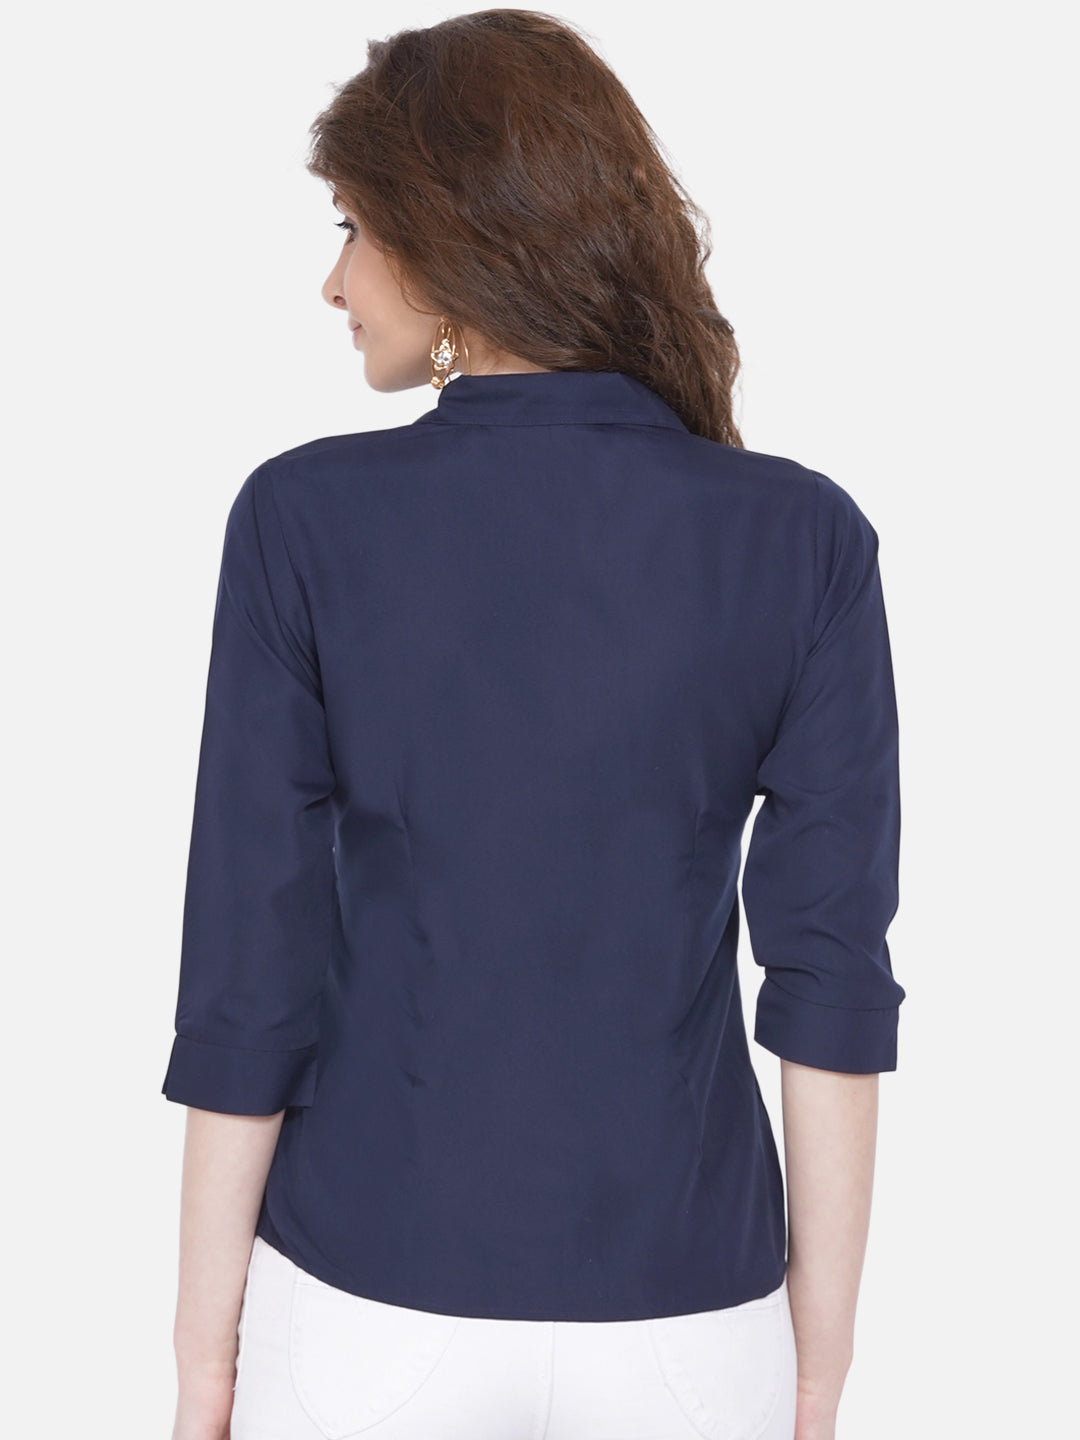 Women's Blue Casual Shirt - Wahe-Noor